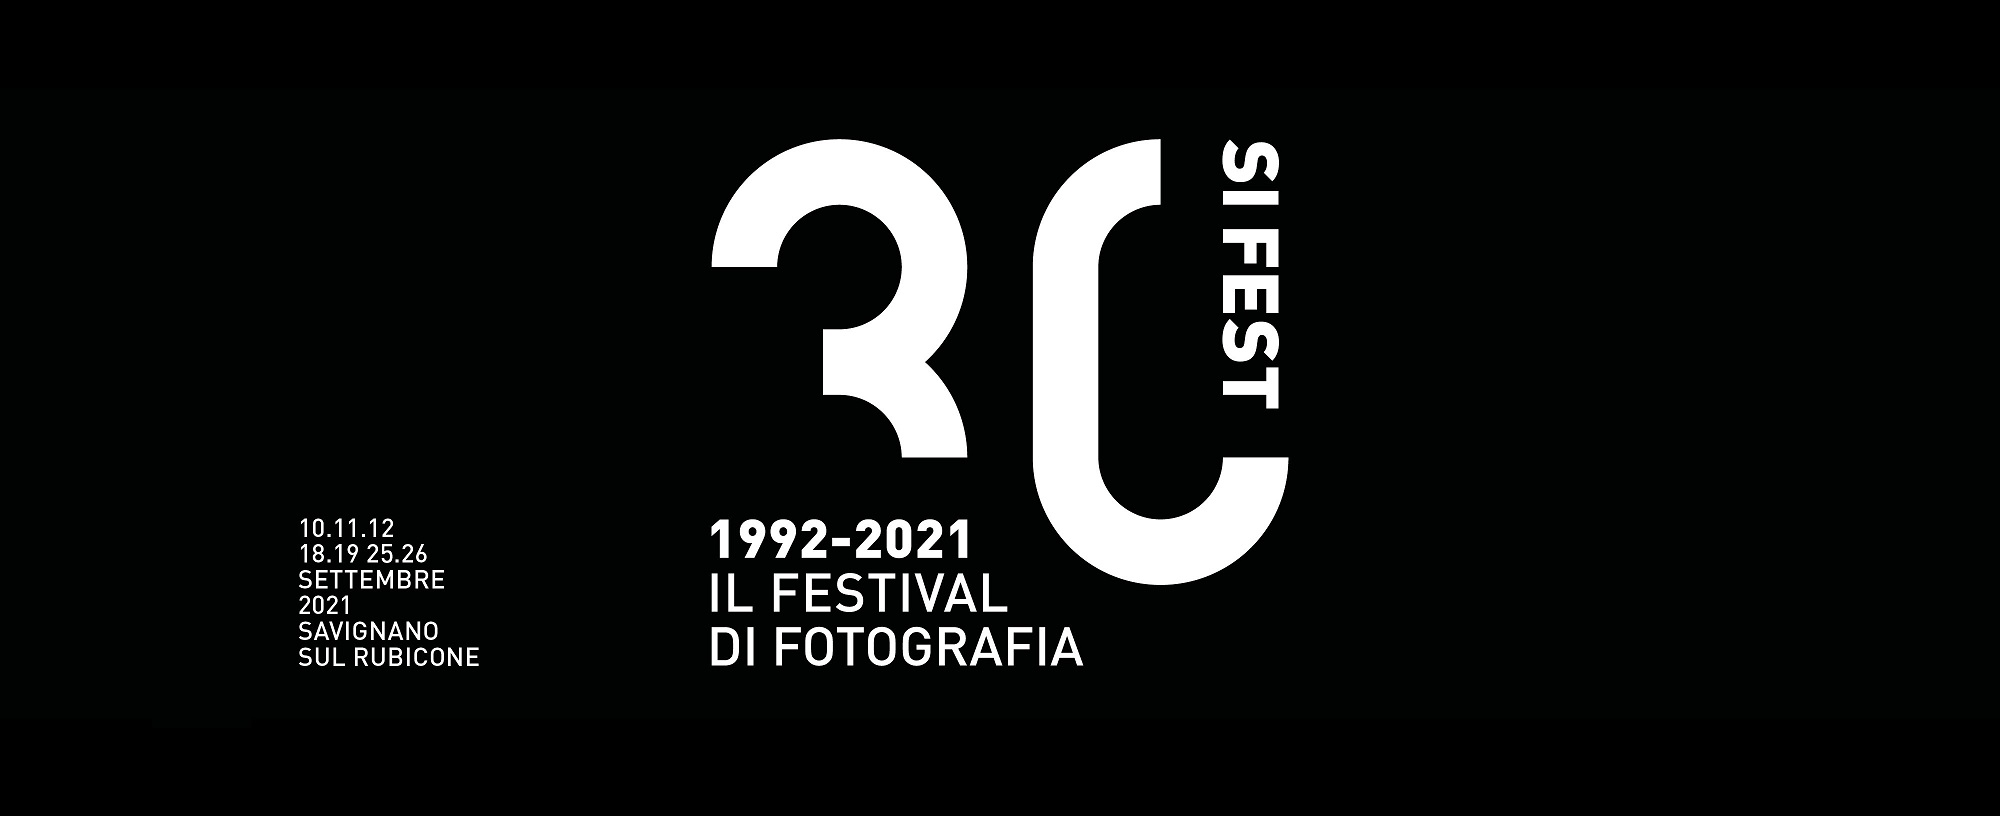 Immagini di SI FEST Il festival di fotografia 2021 – 30a Ed